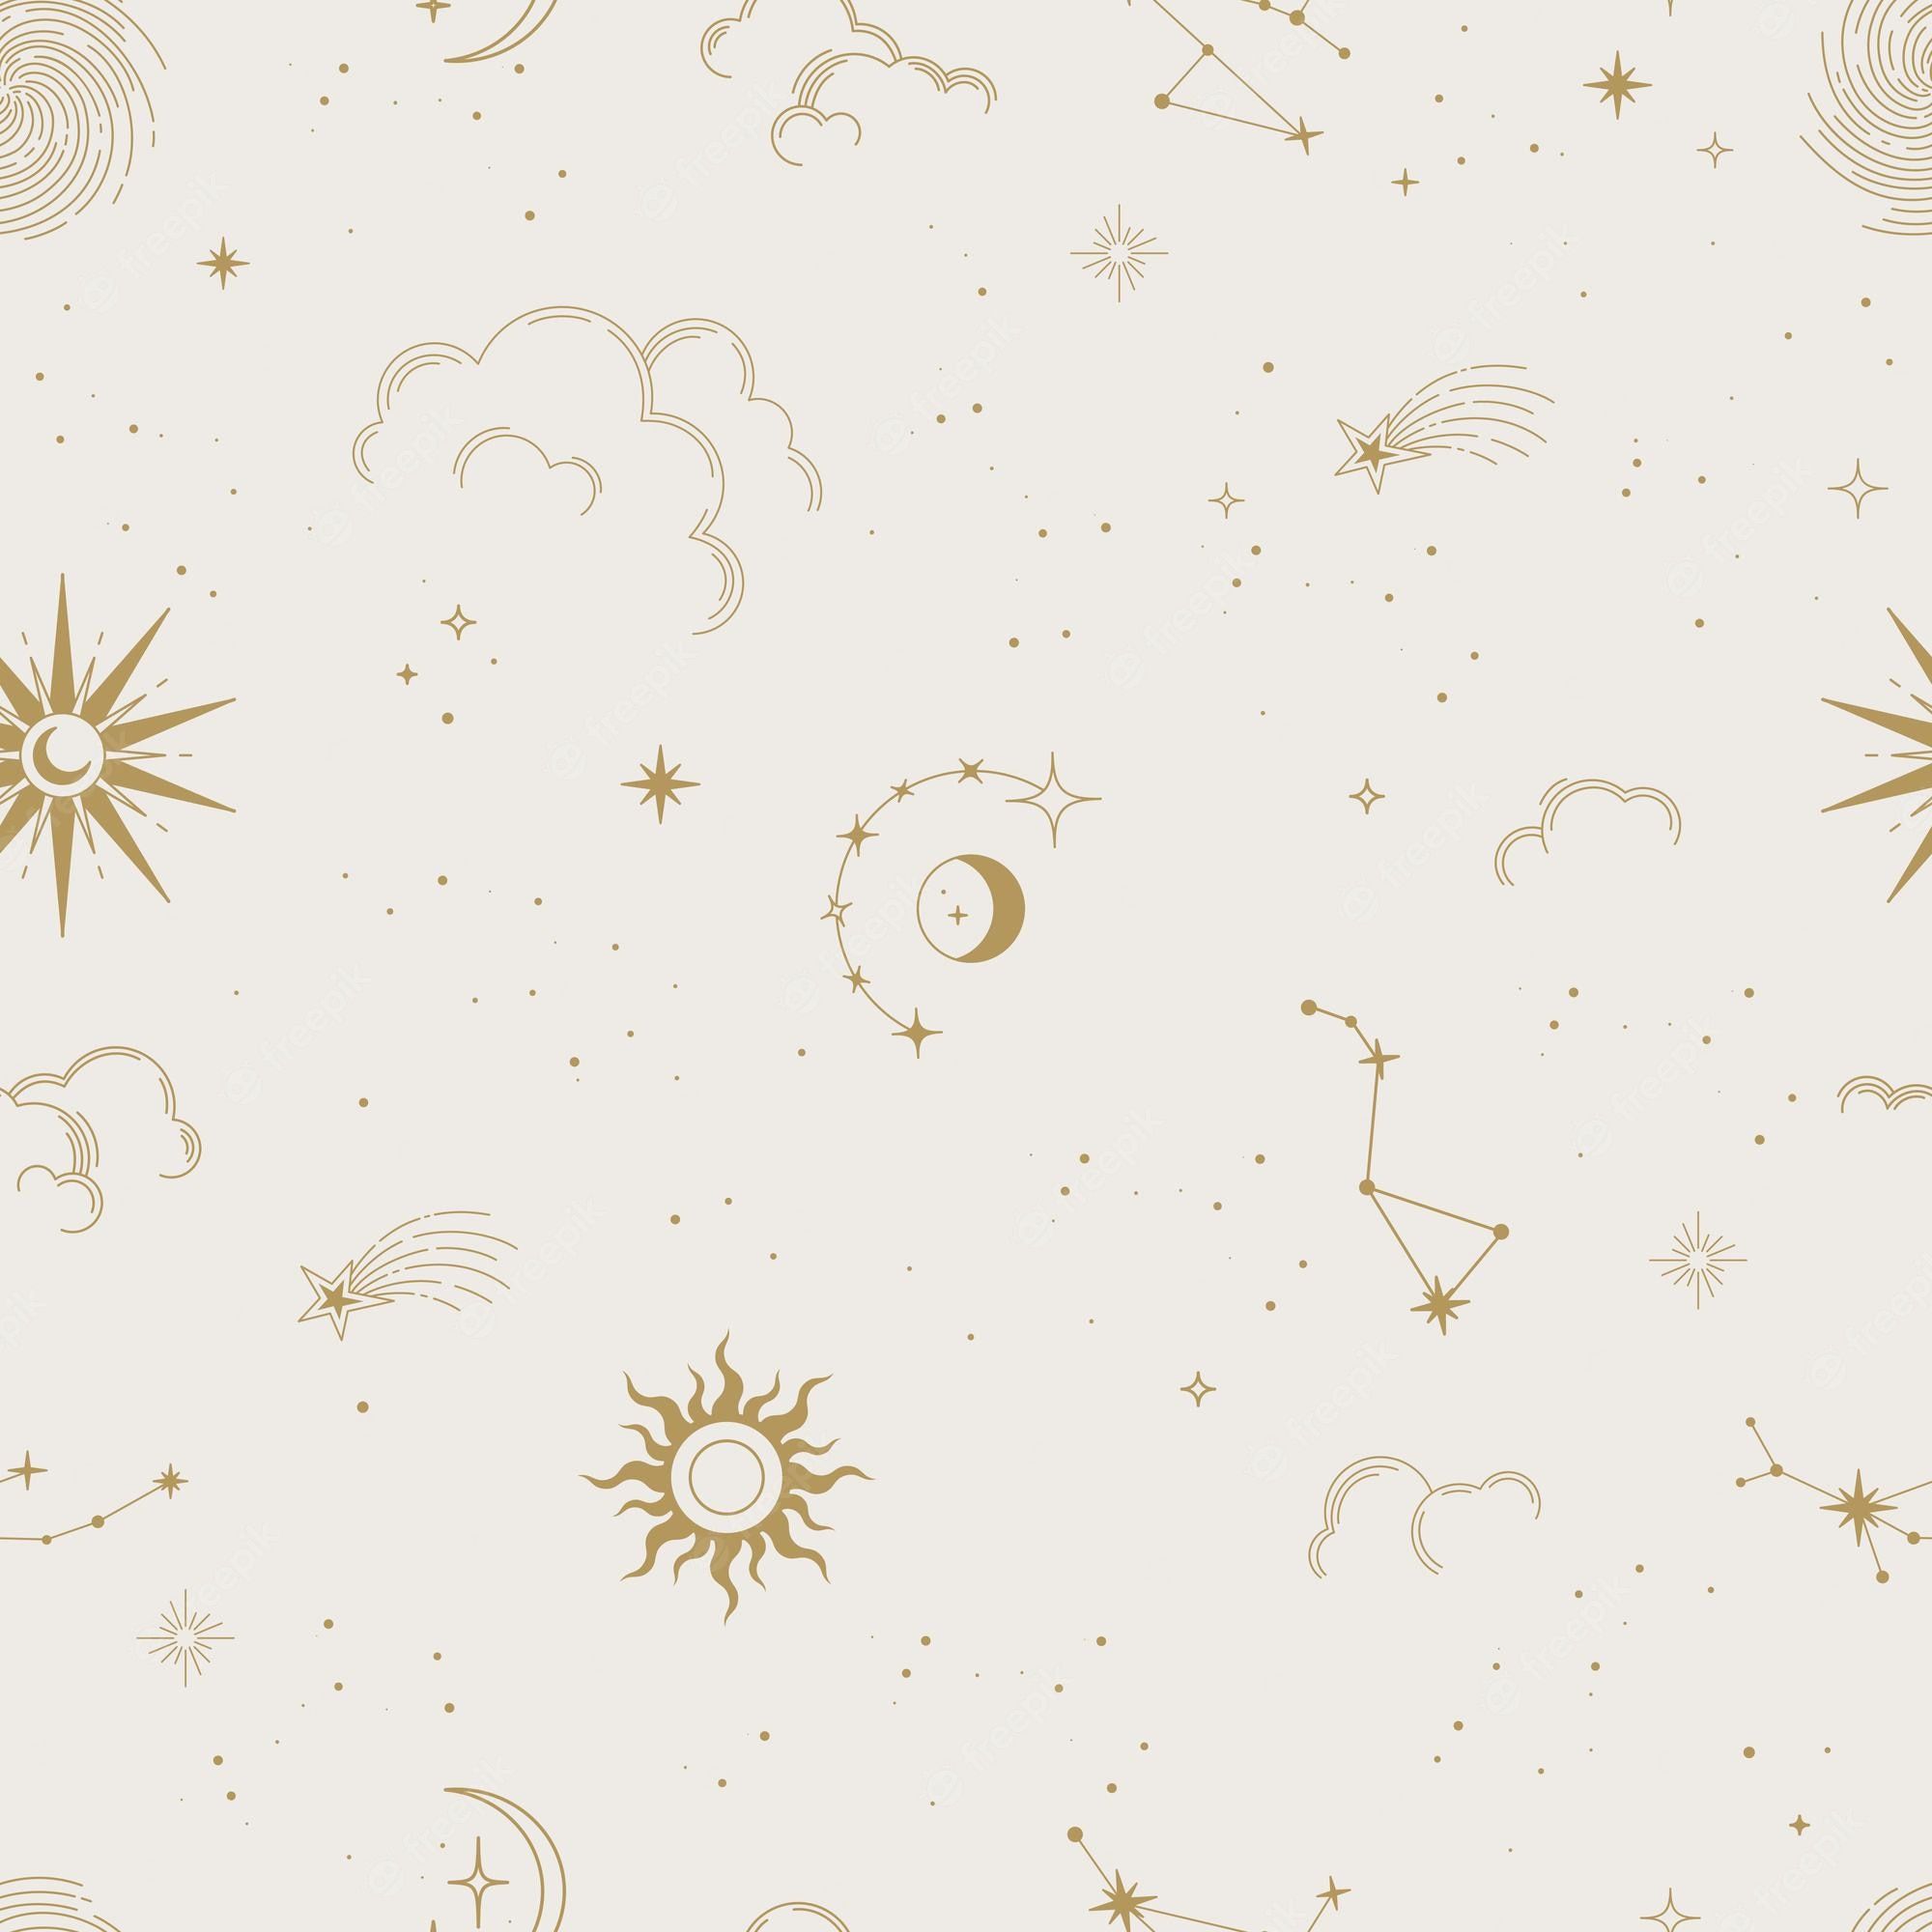  Sterne Hintergrundbild 2000x2000. Vector Magisches Nahtloses Muster Mit Konstellationen Sonne Mond Wolken Und Sternen